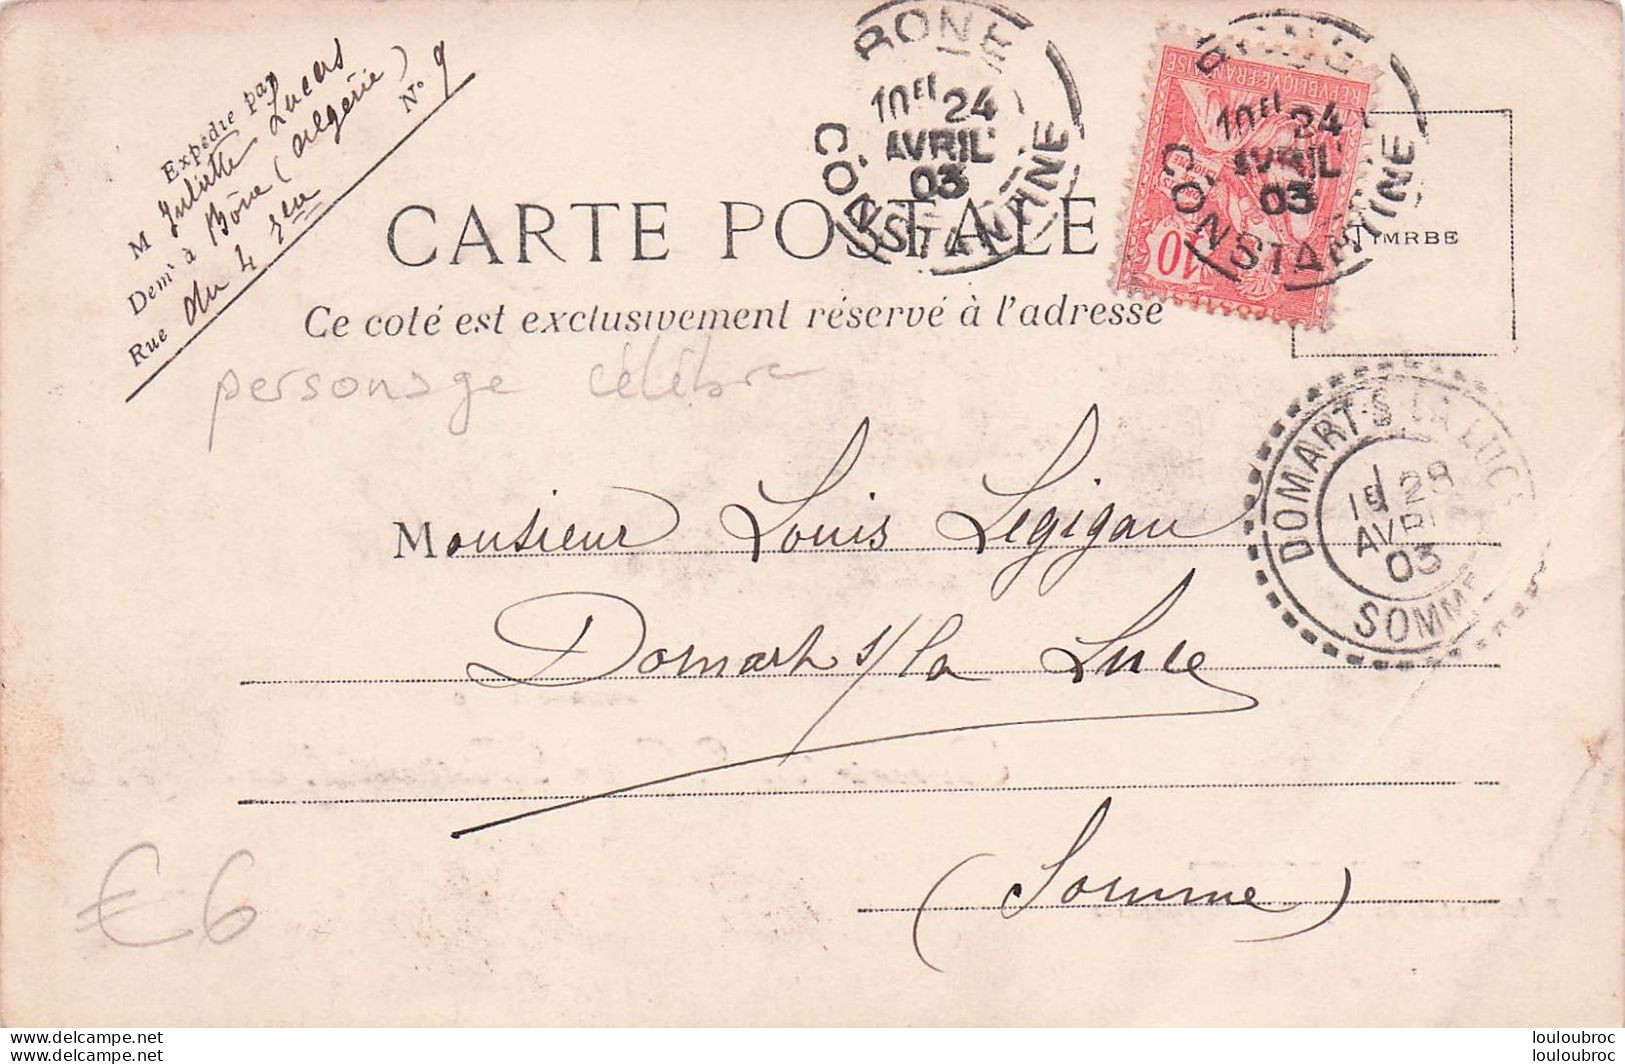 EMILE LOUBET SOUVENIR DU VOYAGE PRESIDENTIEL EN ALGERIE 04/1903  BATEAU JEANNE D'ARC - Persönlichkeiten